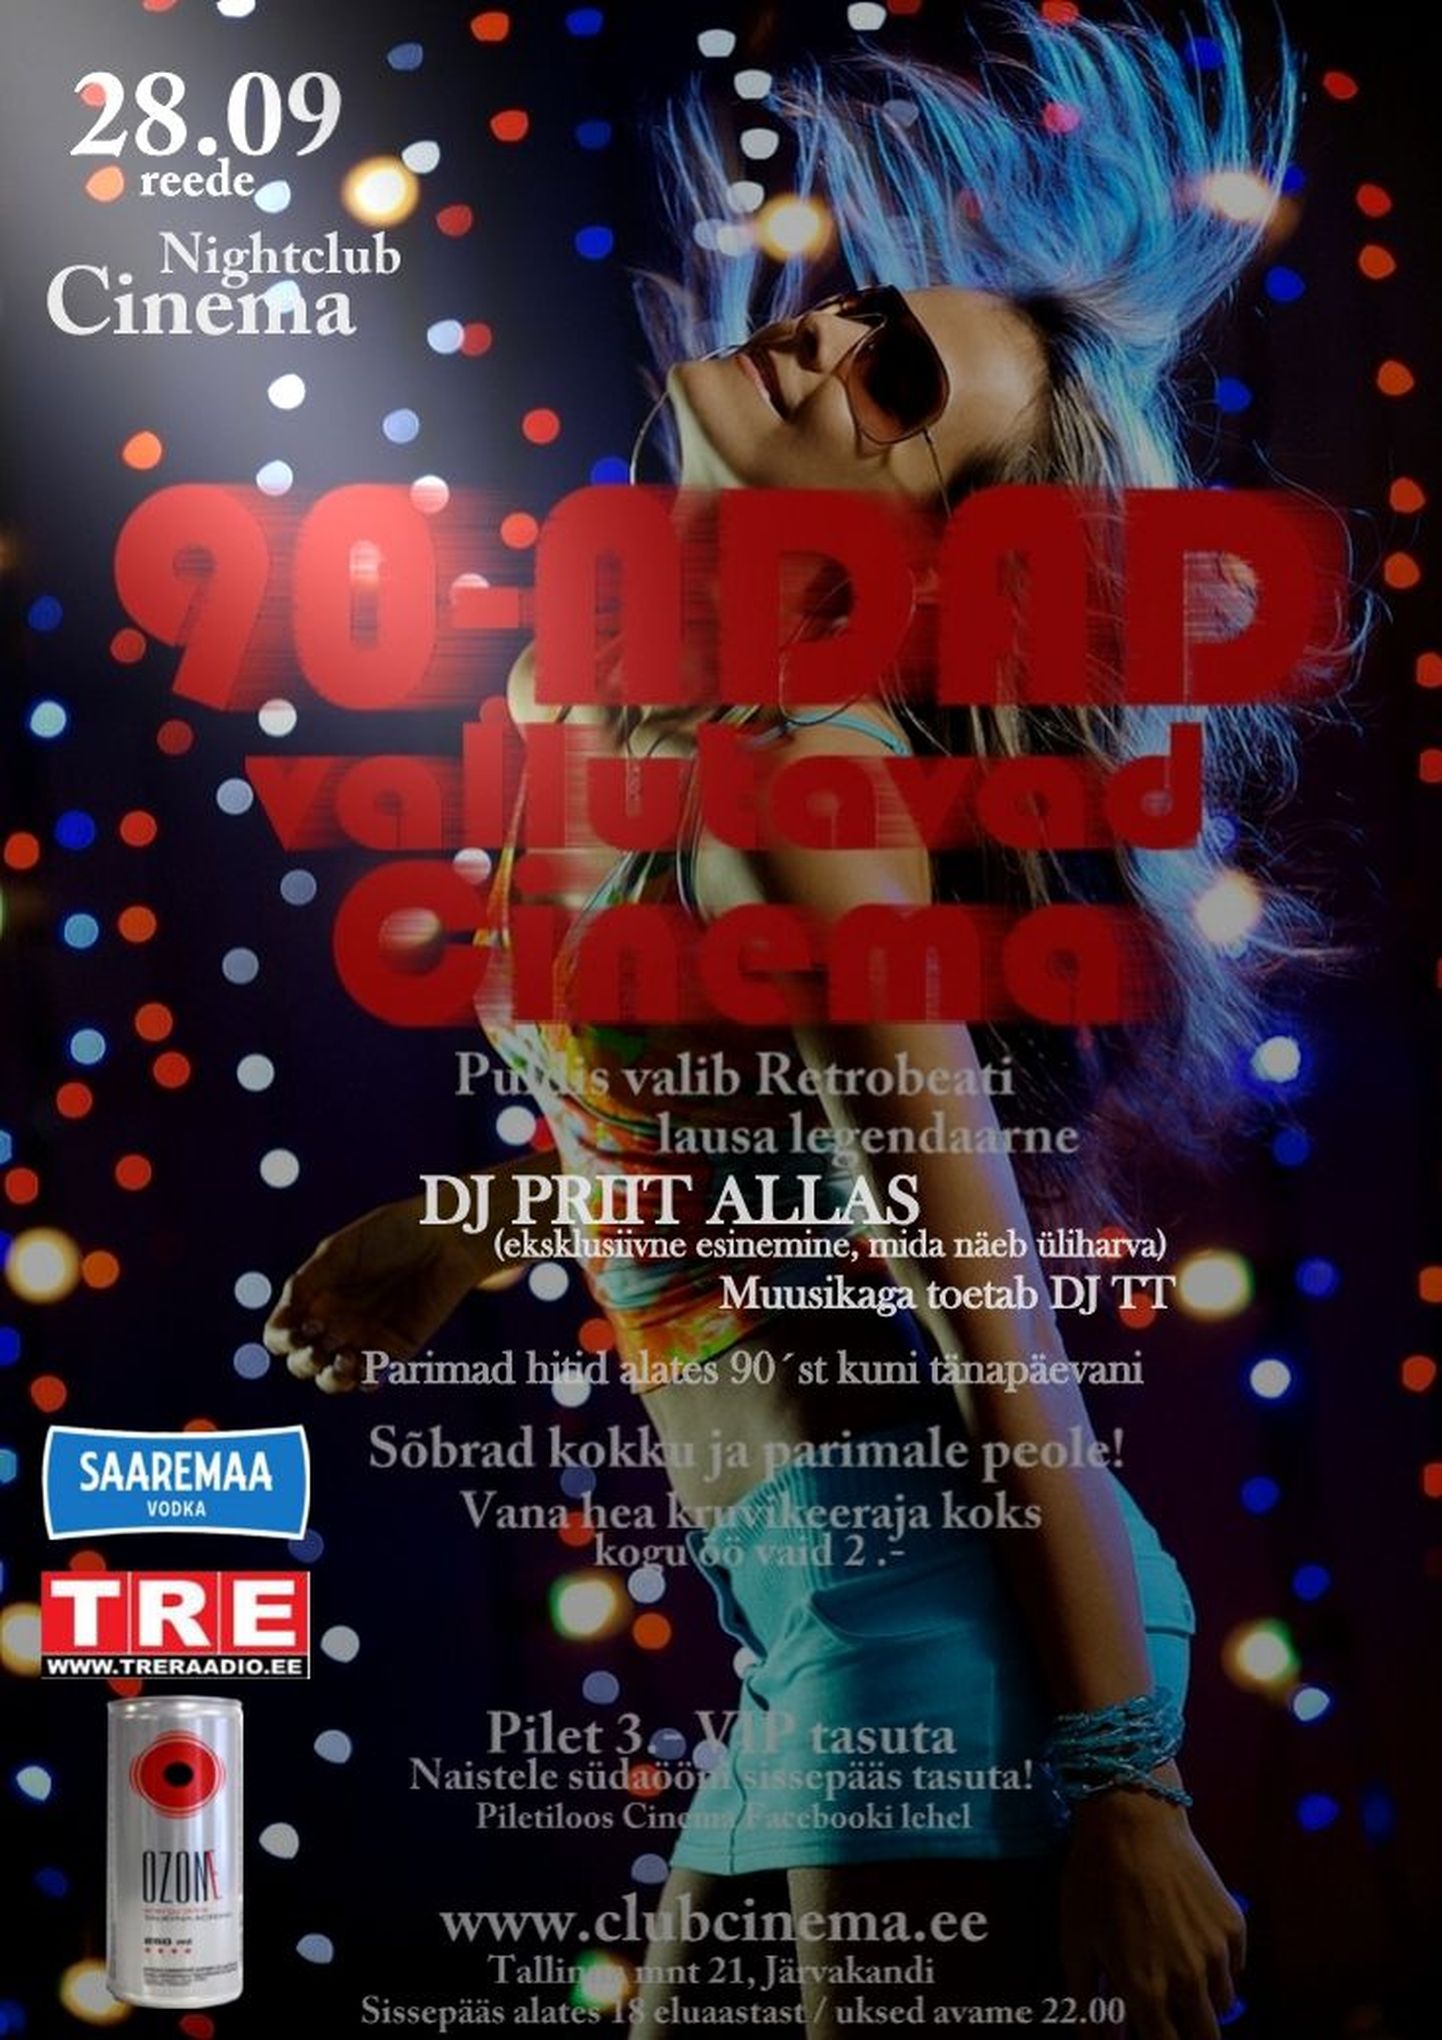 DJ Priit Allas eksklusiivselt sel reedel ööklubis Cinema!